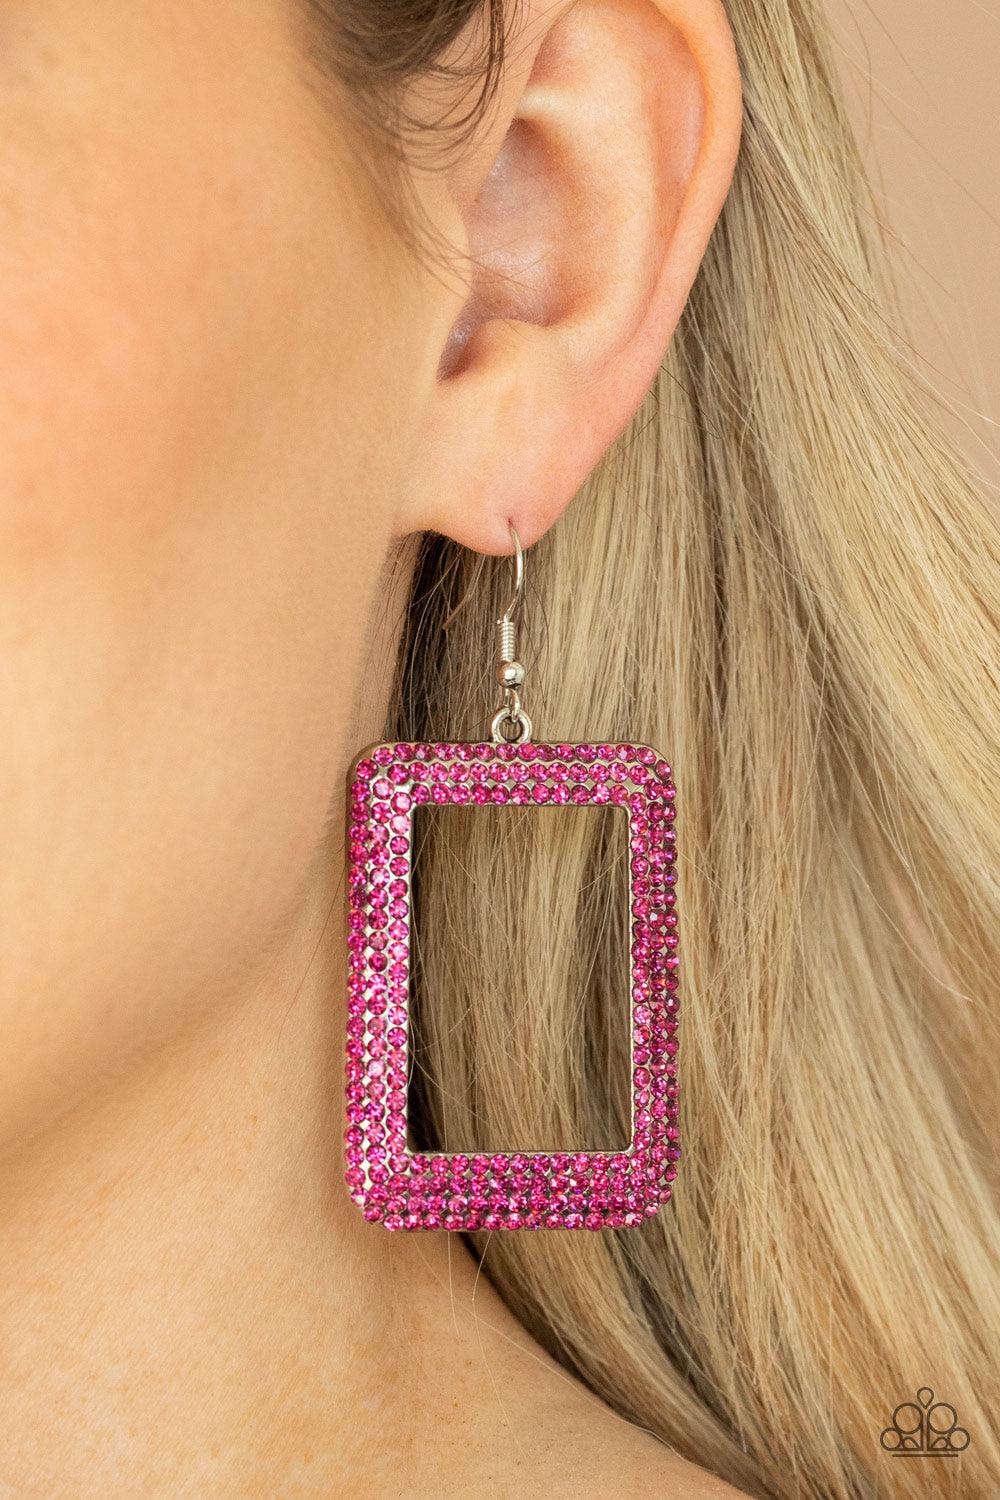 World FRAME-ous - Pink Earrings - Jewelry by Bretta